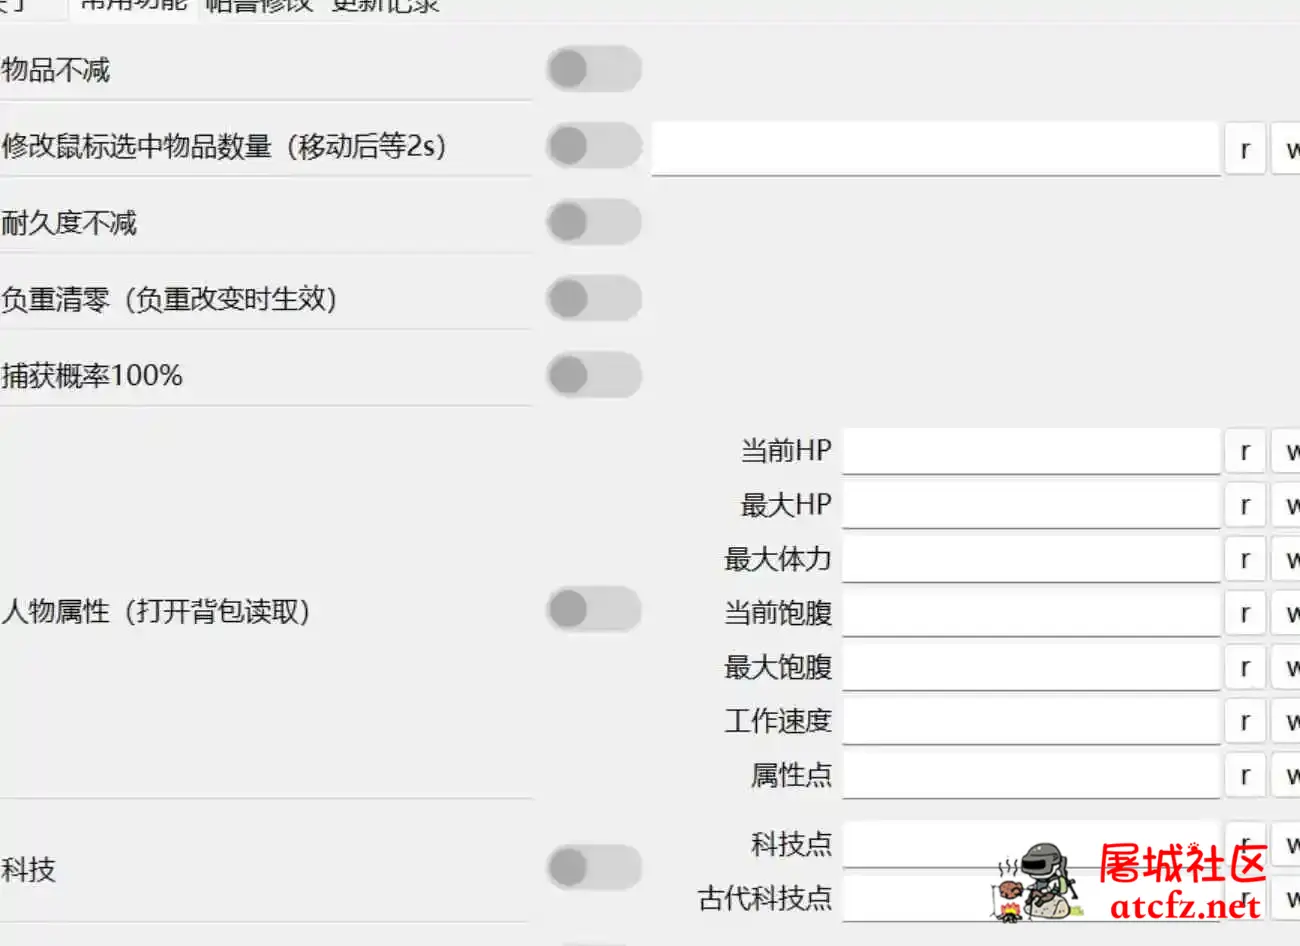 网友自制幻兽帕鲁修改器0.2.2.1中文版 屠城辅助网www.tcfz1.com2151